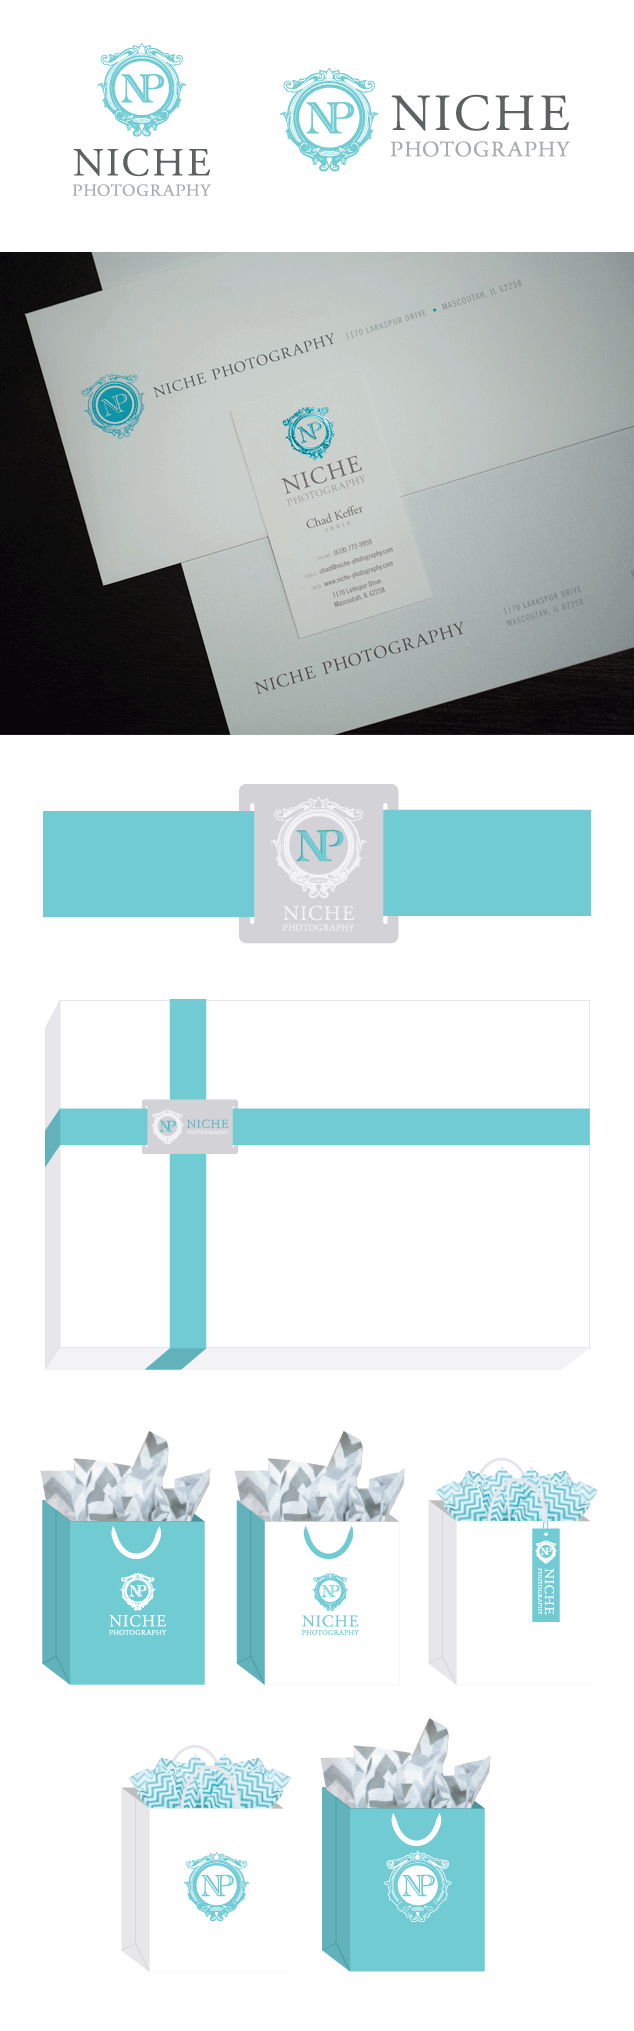 Niche-logo-package-design